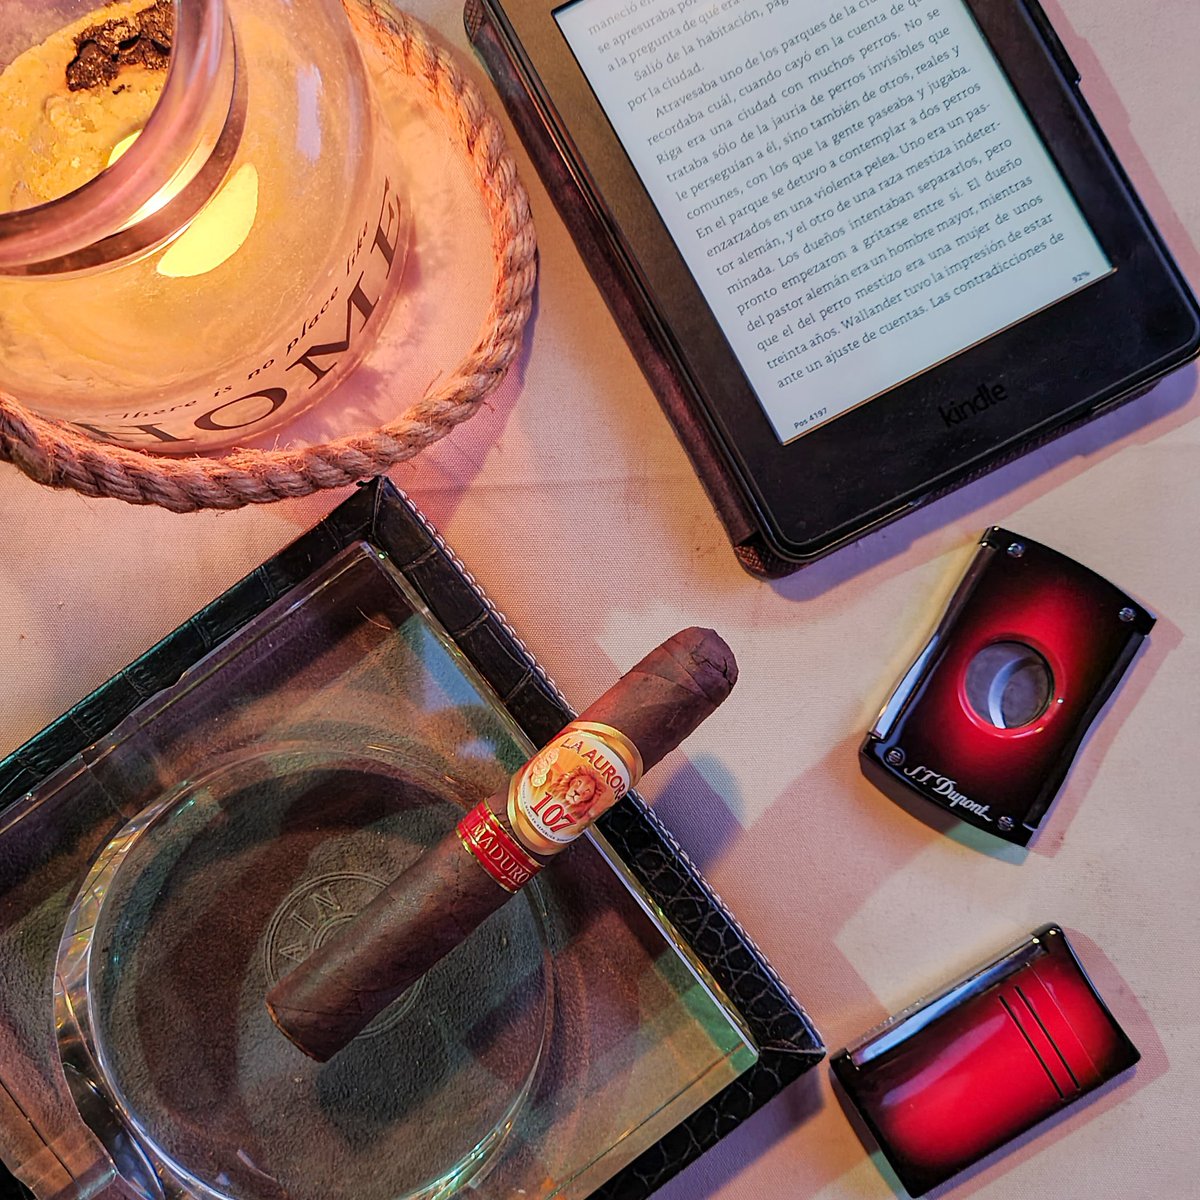 Terminando el día con LA AURORA 107 Maduro Robusto y un rato de lectura.

#clubmomentohumo #laauroracigars #laaurora107 #laaurora107maduro #stdupont #stdupont #cigars #cigarlife #cigarsociety #cigarlover #cigarsnob #cigaraficionado #cigartime